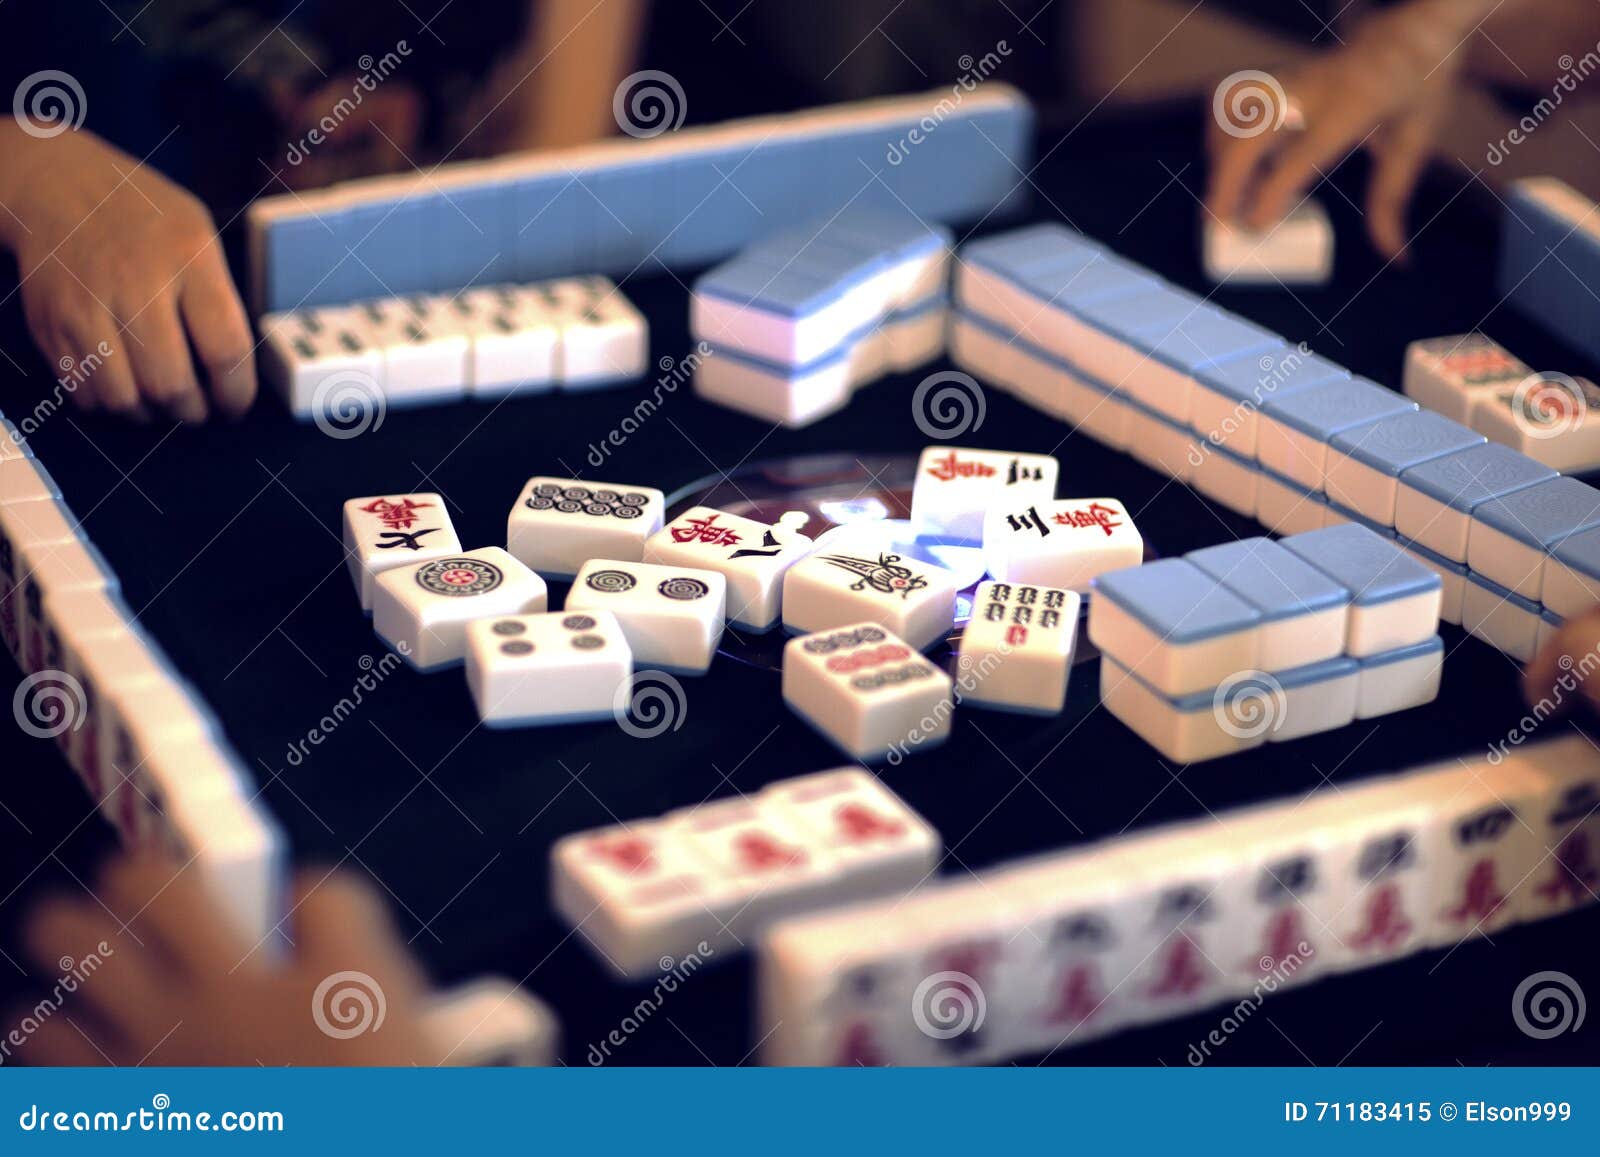 Fotos Telhas Mahjong, 56.000+ fotos de arquivo grátis de alta qualidade